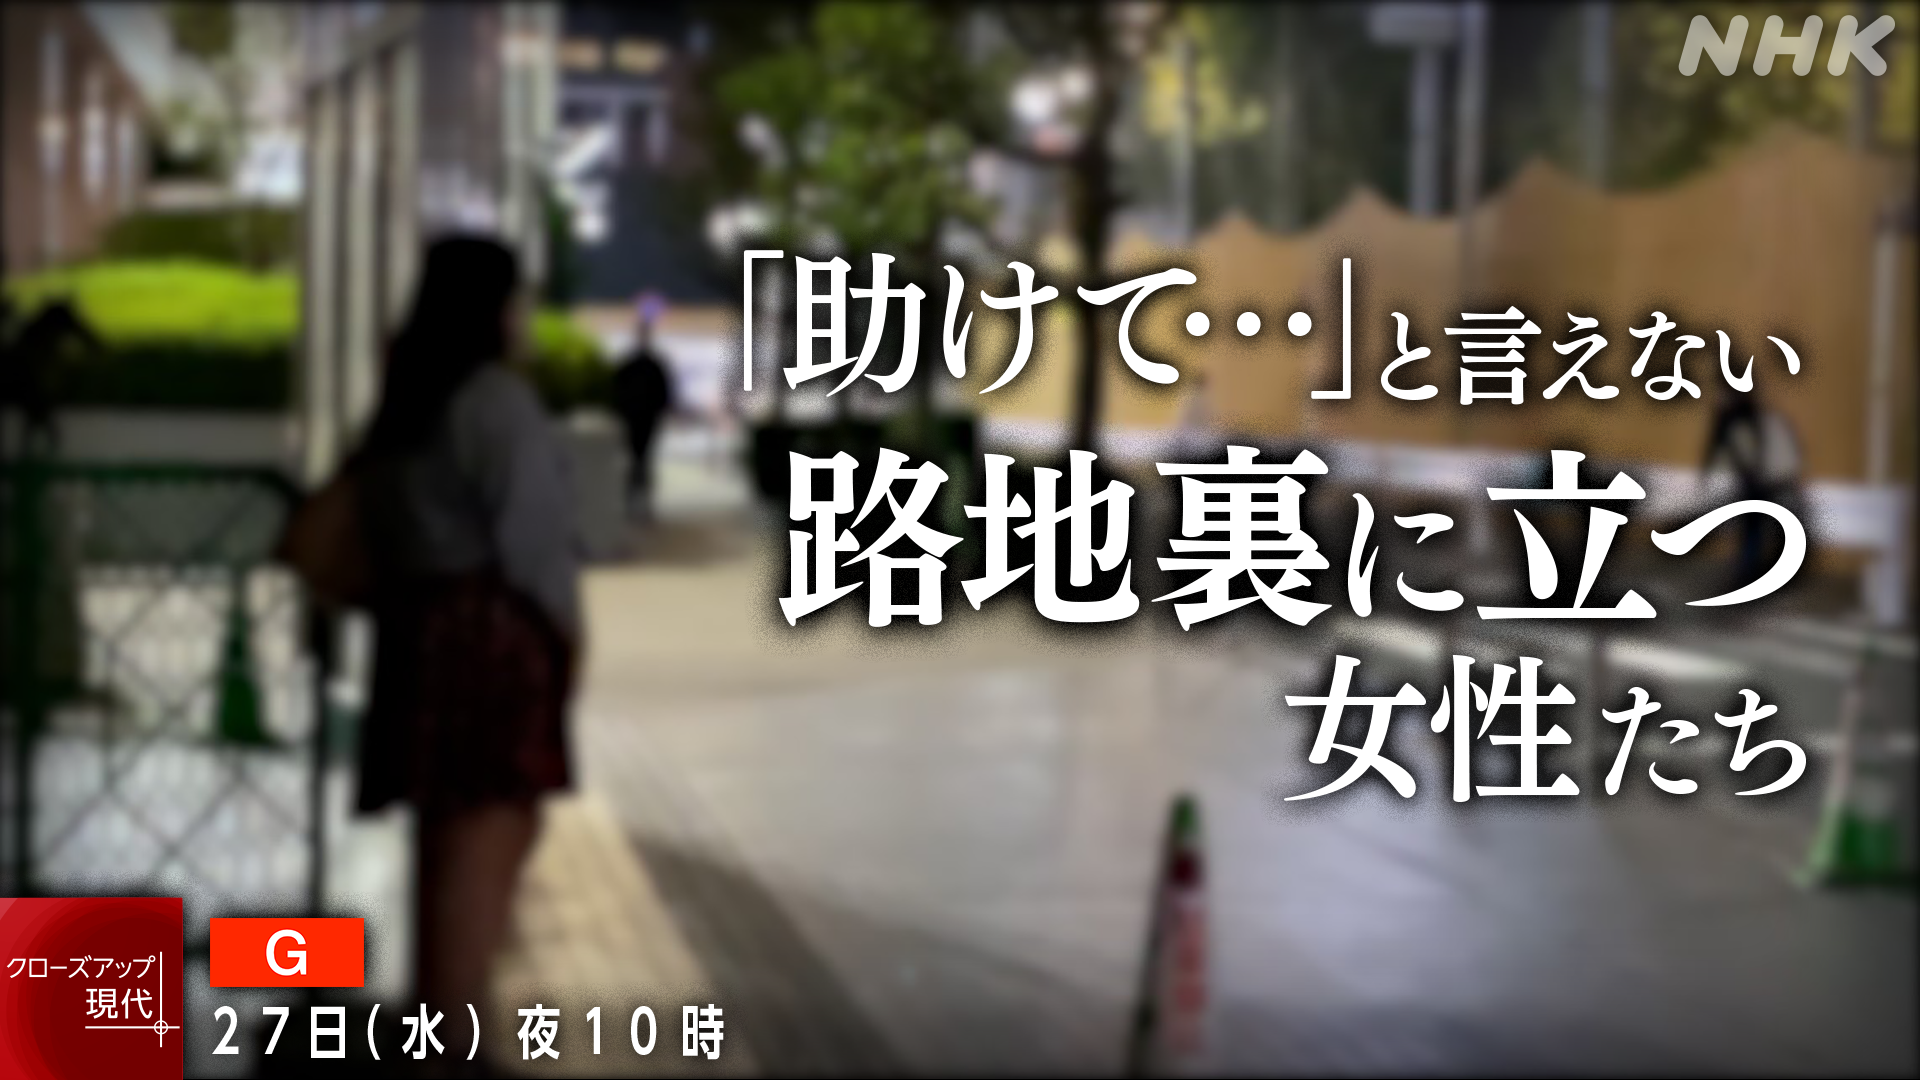 歌舞伎町の路地裏に立ち売春する女性たち 支援につなげていくためには